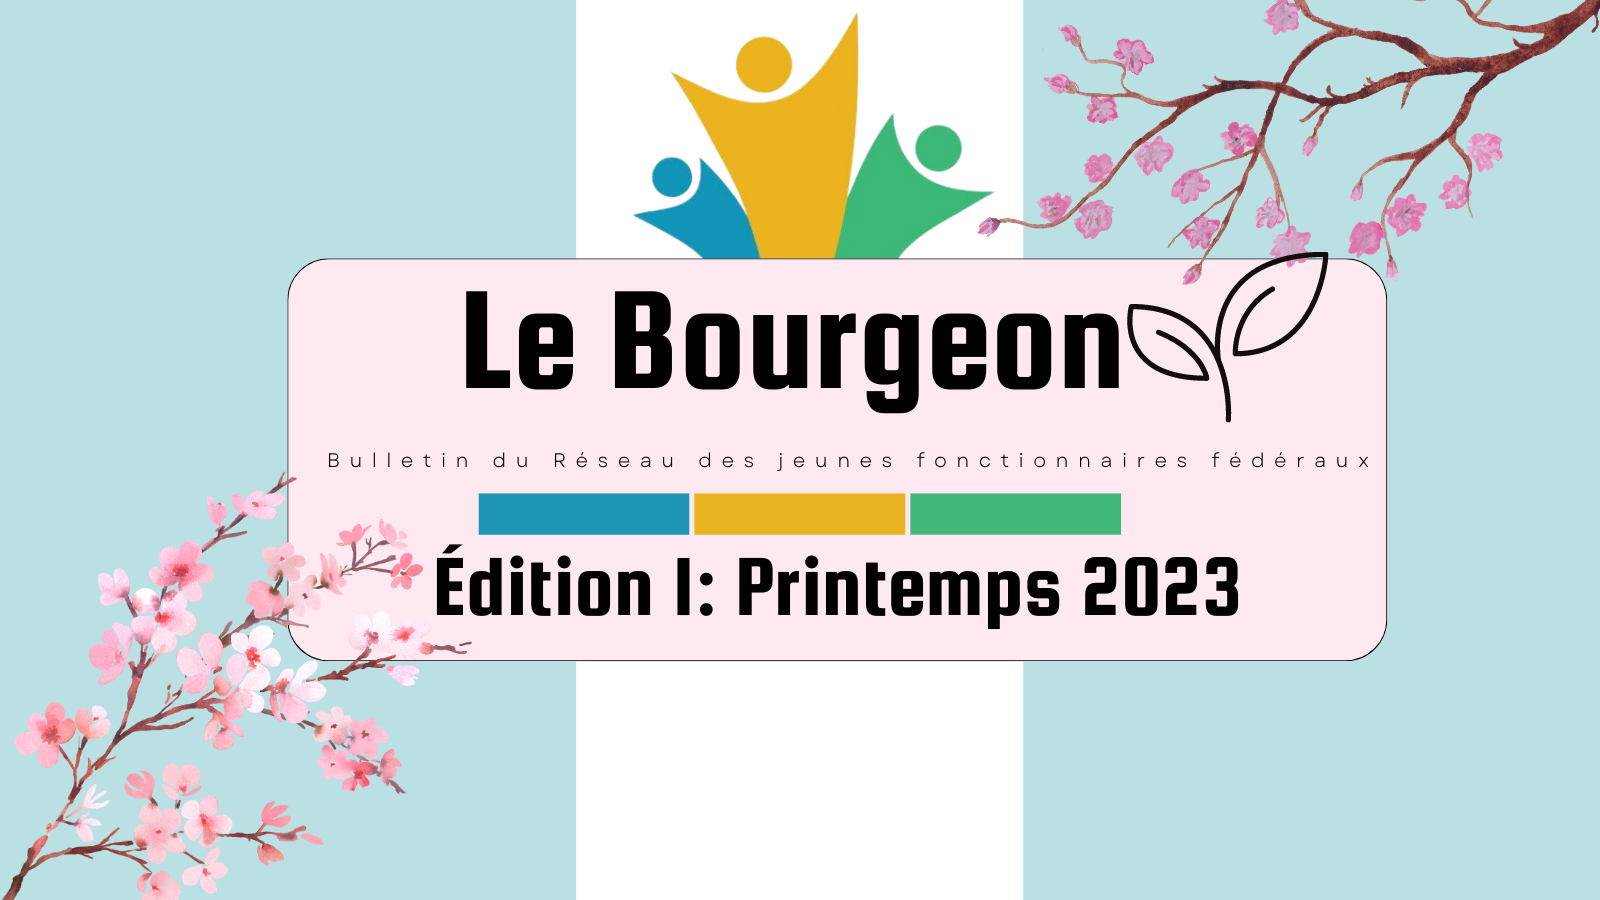 Le Bourgeon. Bulletin du Réseau des jeunes fonctionnaires fédéraux. Édition I: Printemps 2023